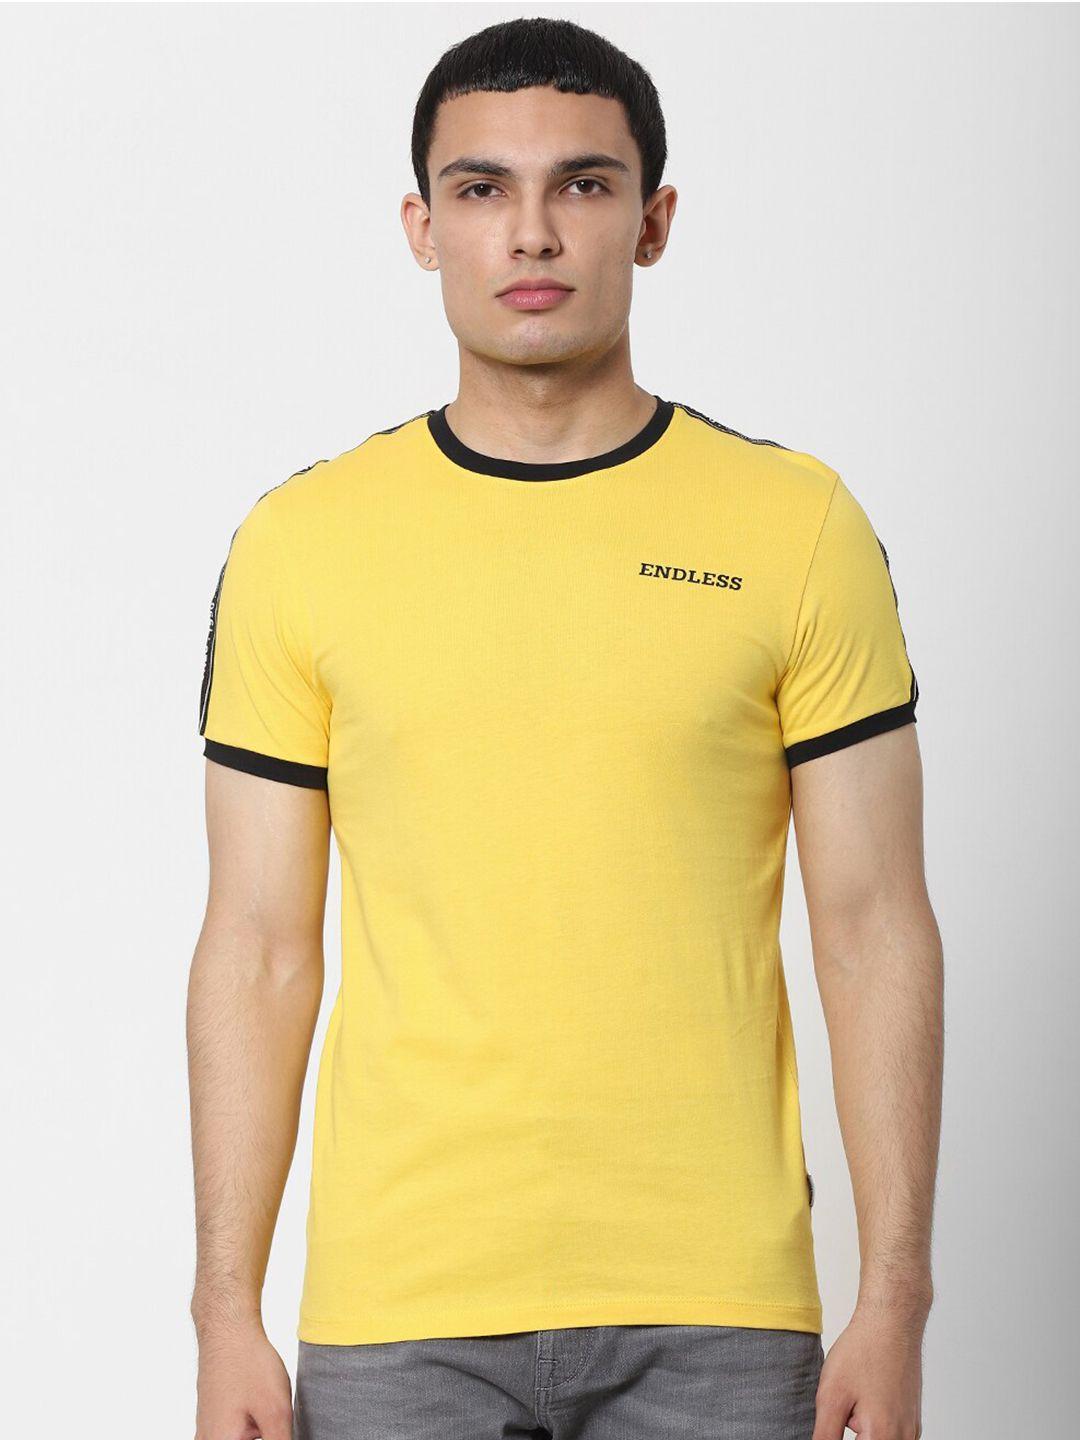 jack & jones men yellow & black slim fit t-shirt